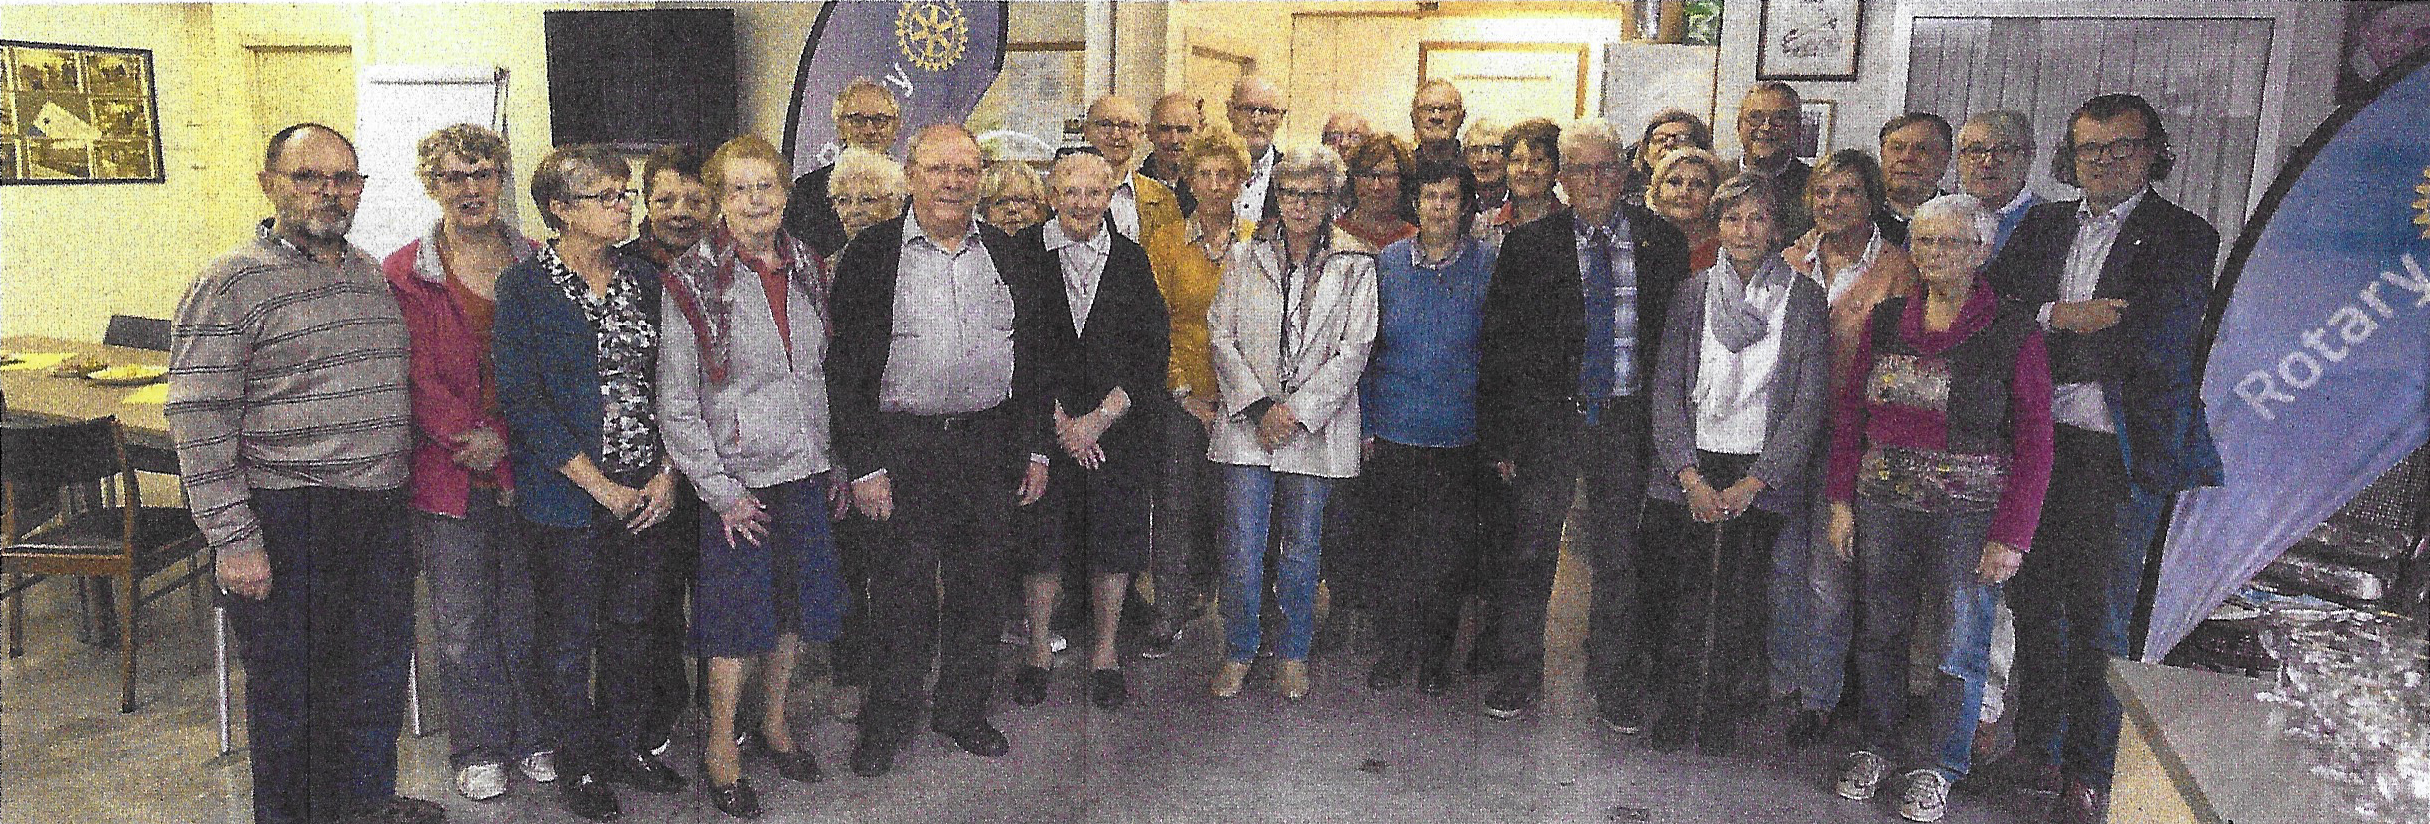 Rotaryclub Poperinge stuurt vrijwilligers naar vzw De Wervel